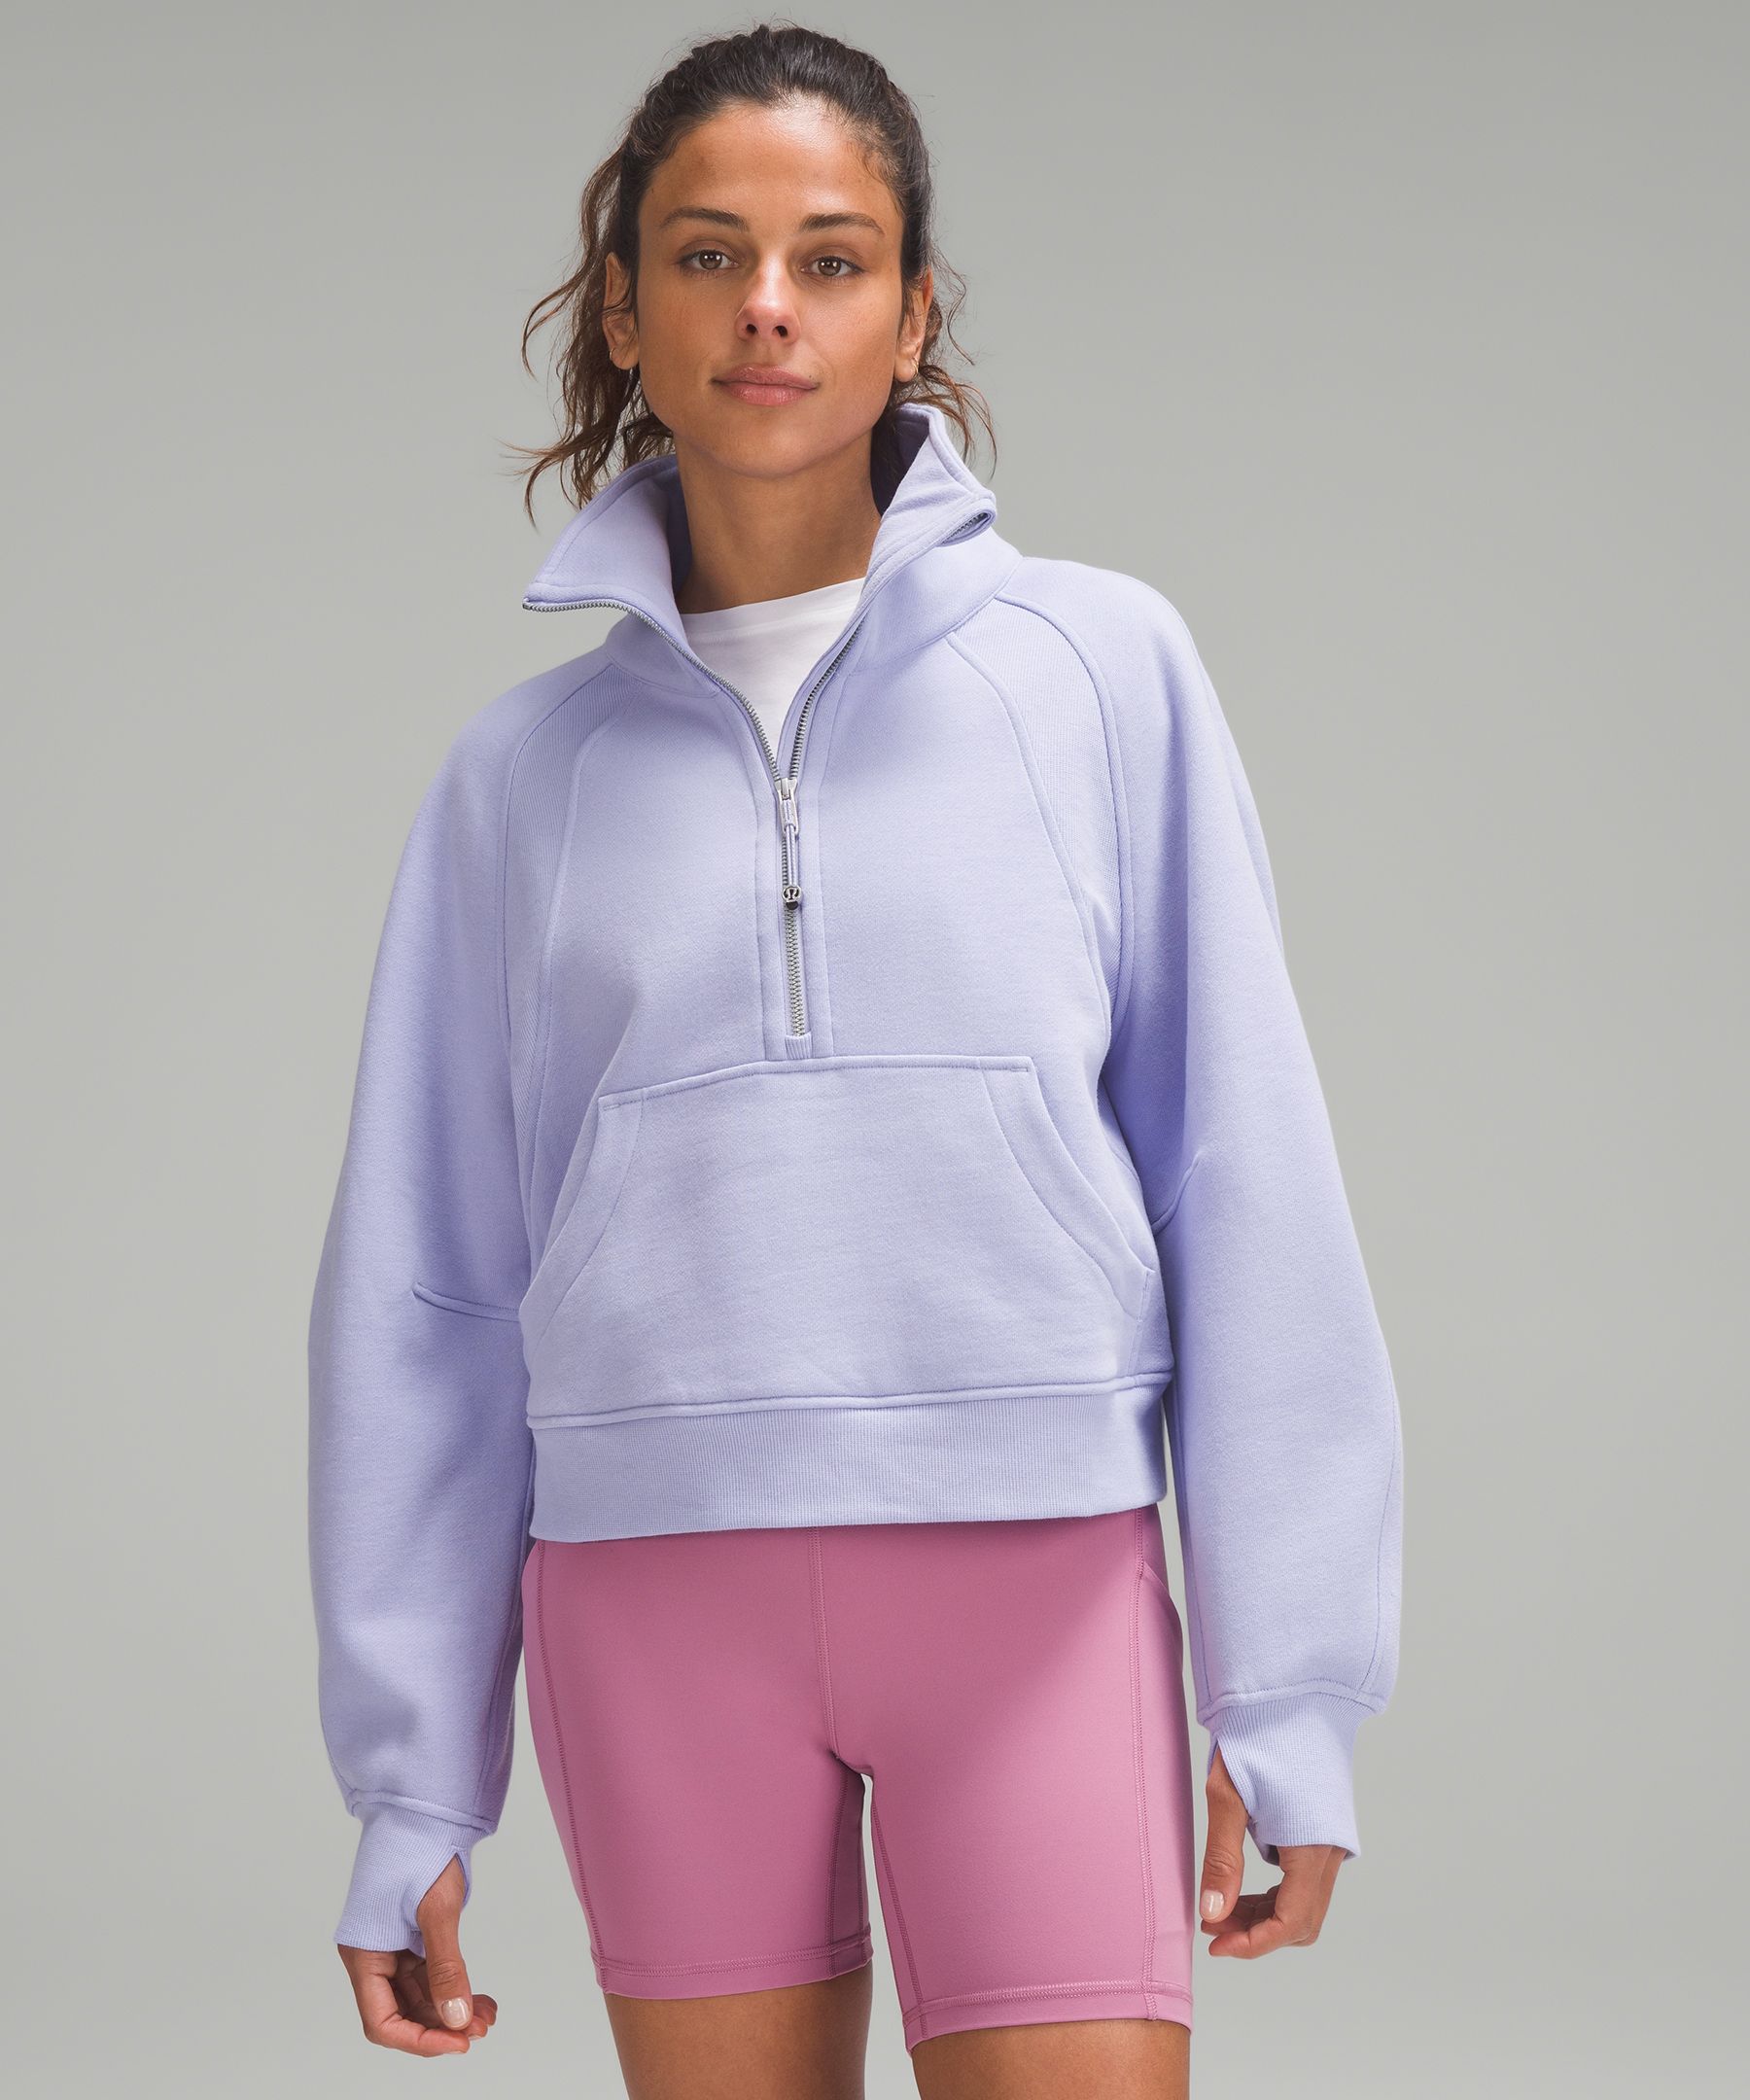 Scuba Oversized Funnel-Neck Half Zip | Women's Hoodies & Sweatshirts ...